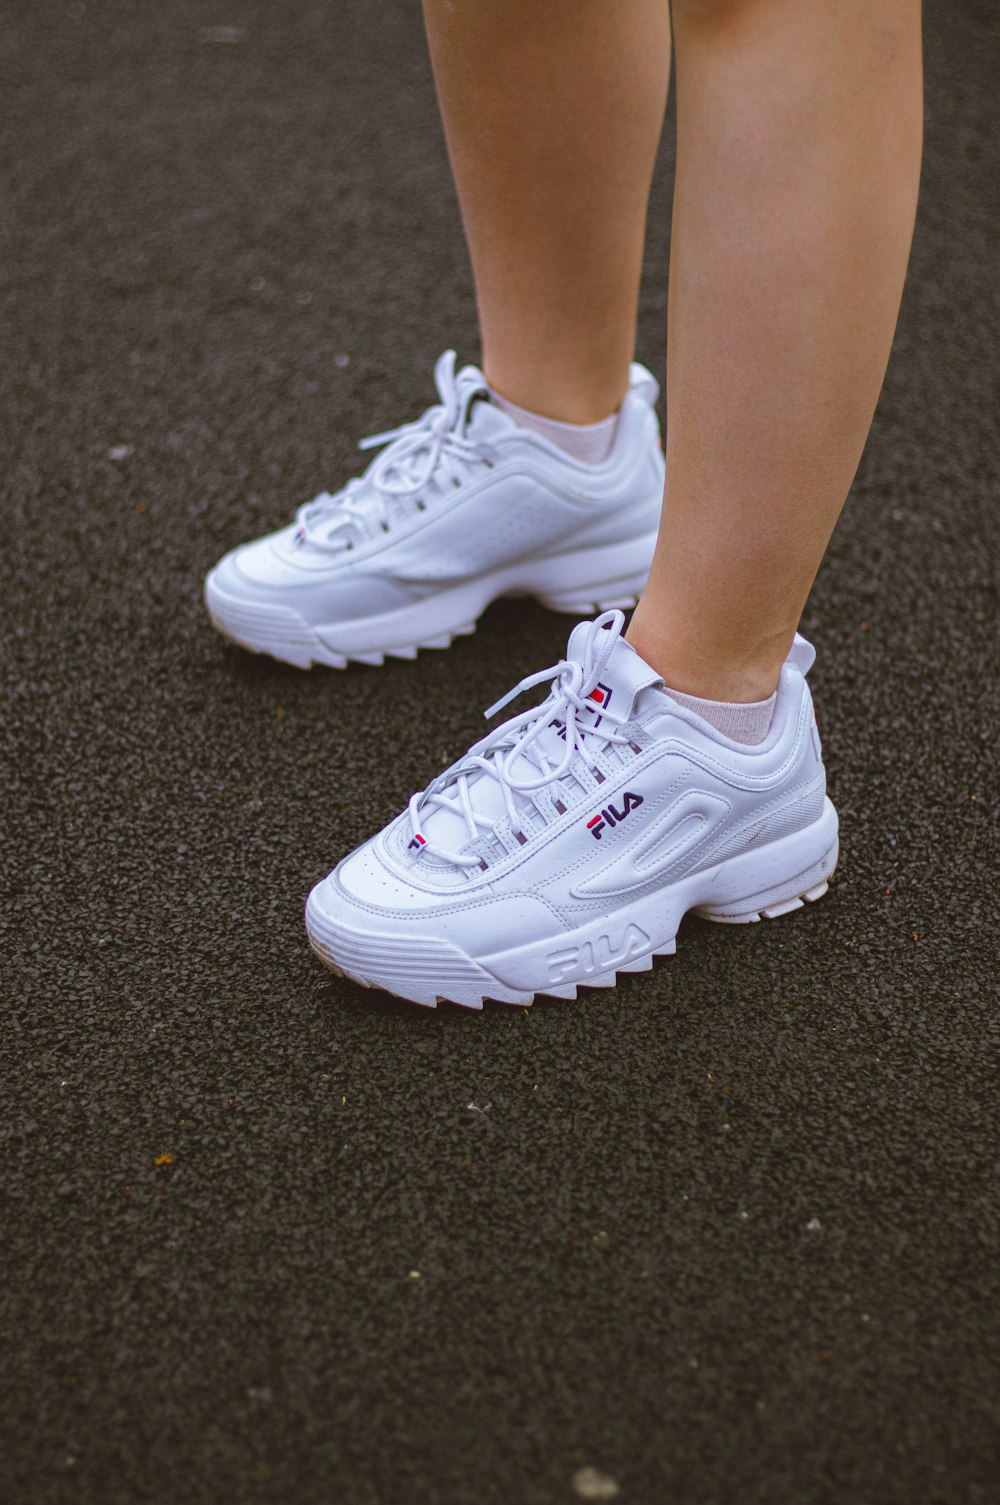 Foto Persona con zapatillas deportivas nike blancas – Imagen Zapatillas  fila gratis en Unsplash